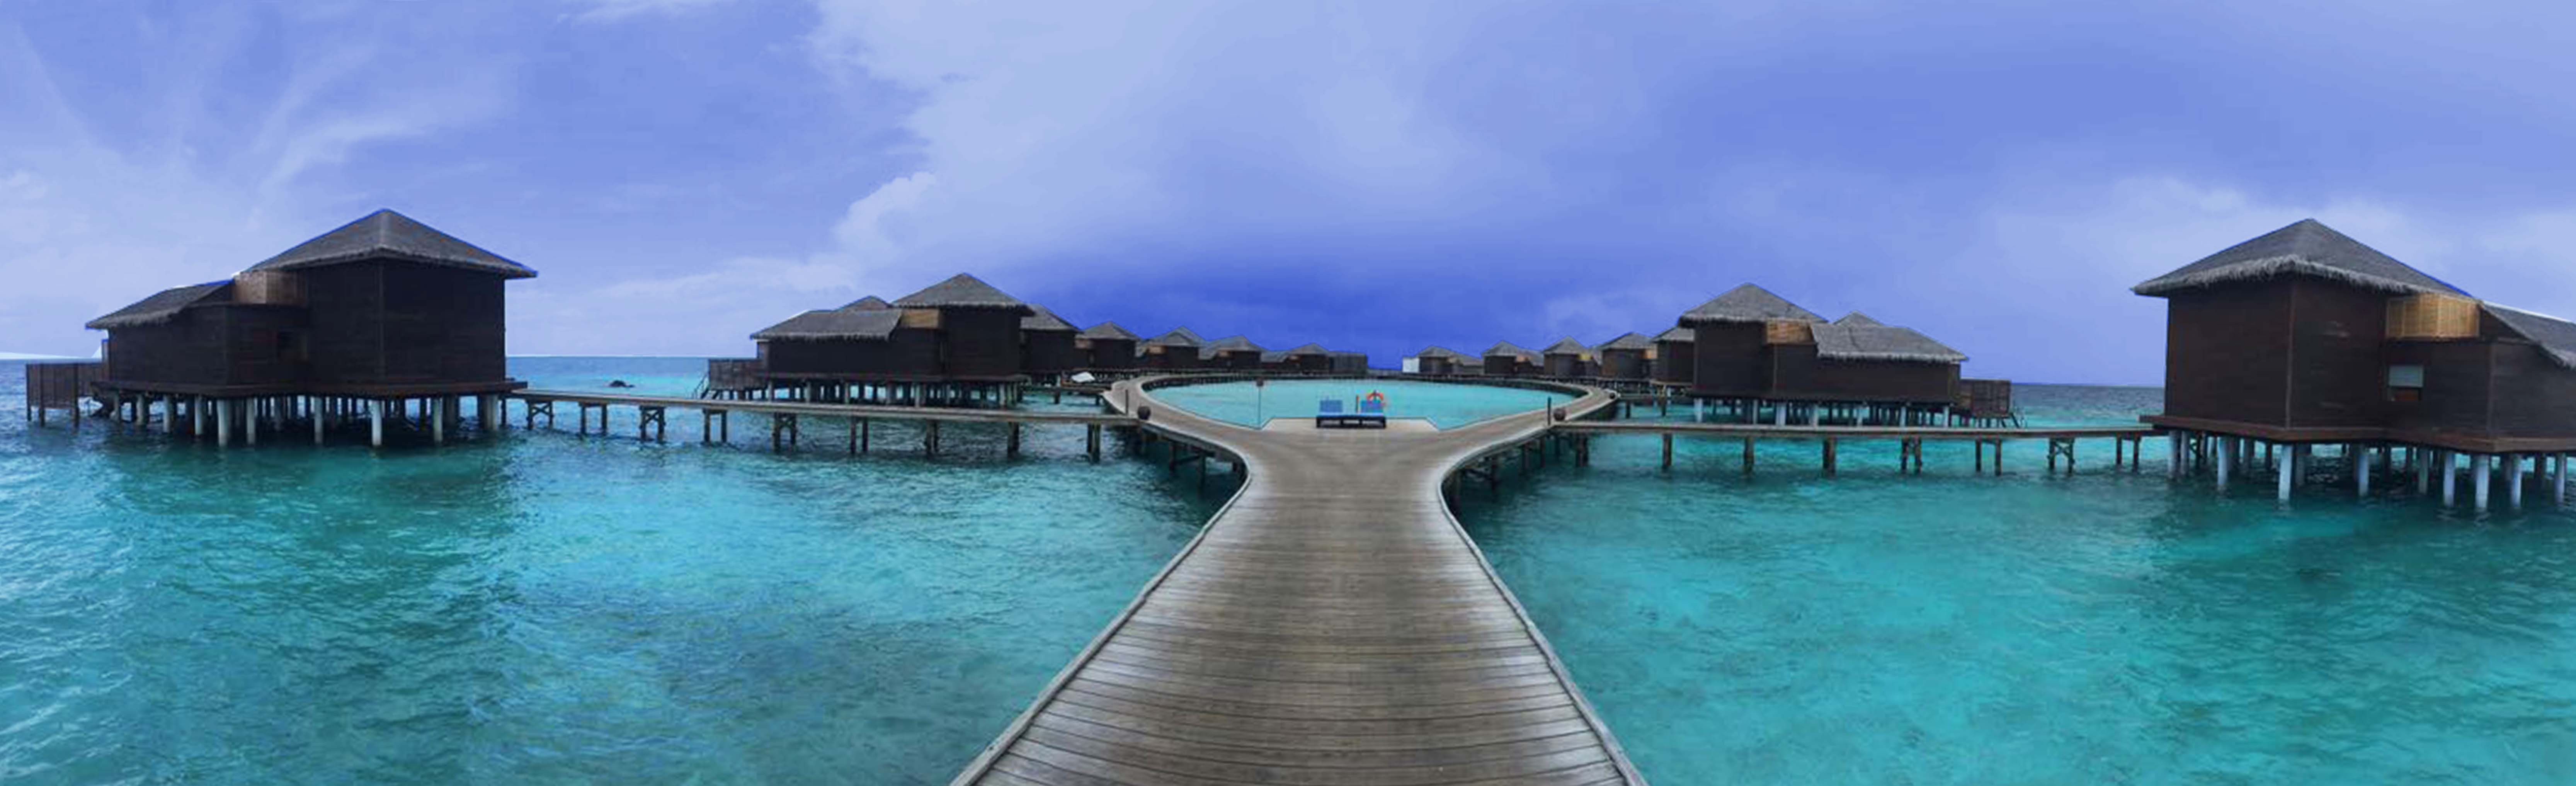 Dhevanafushi Maldives Luxury Resort Joins Accorhotels Suma Explore Asia